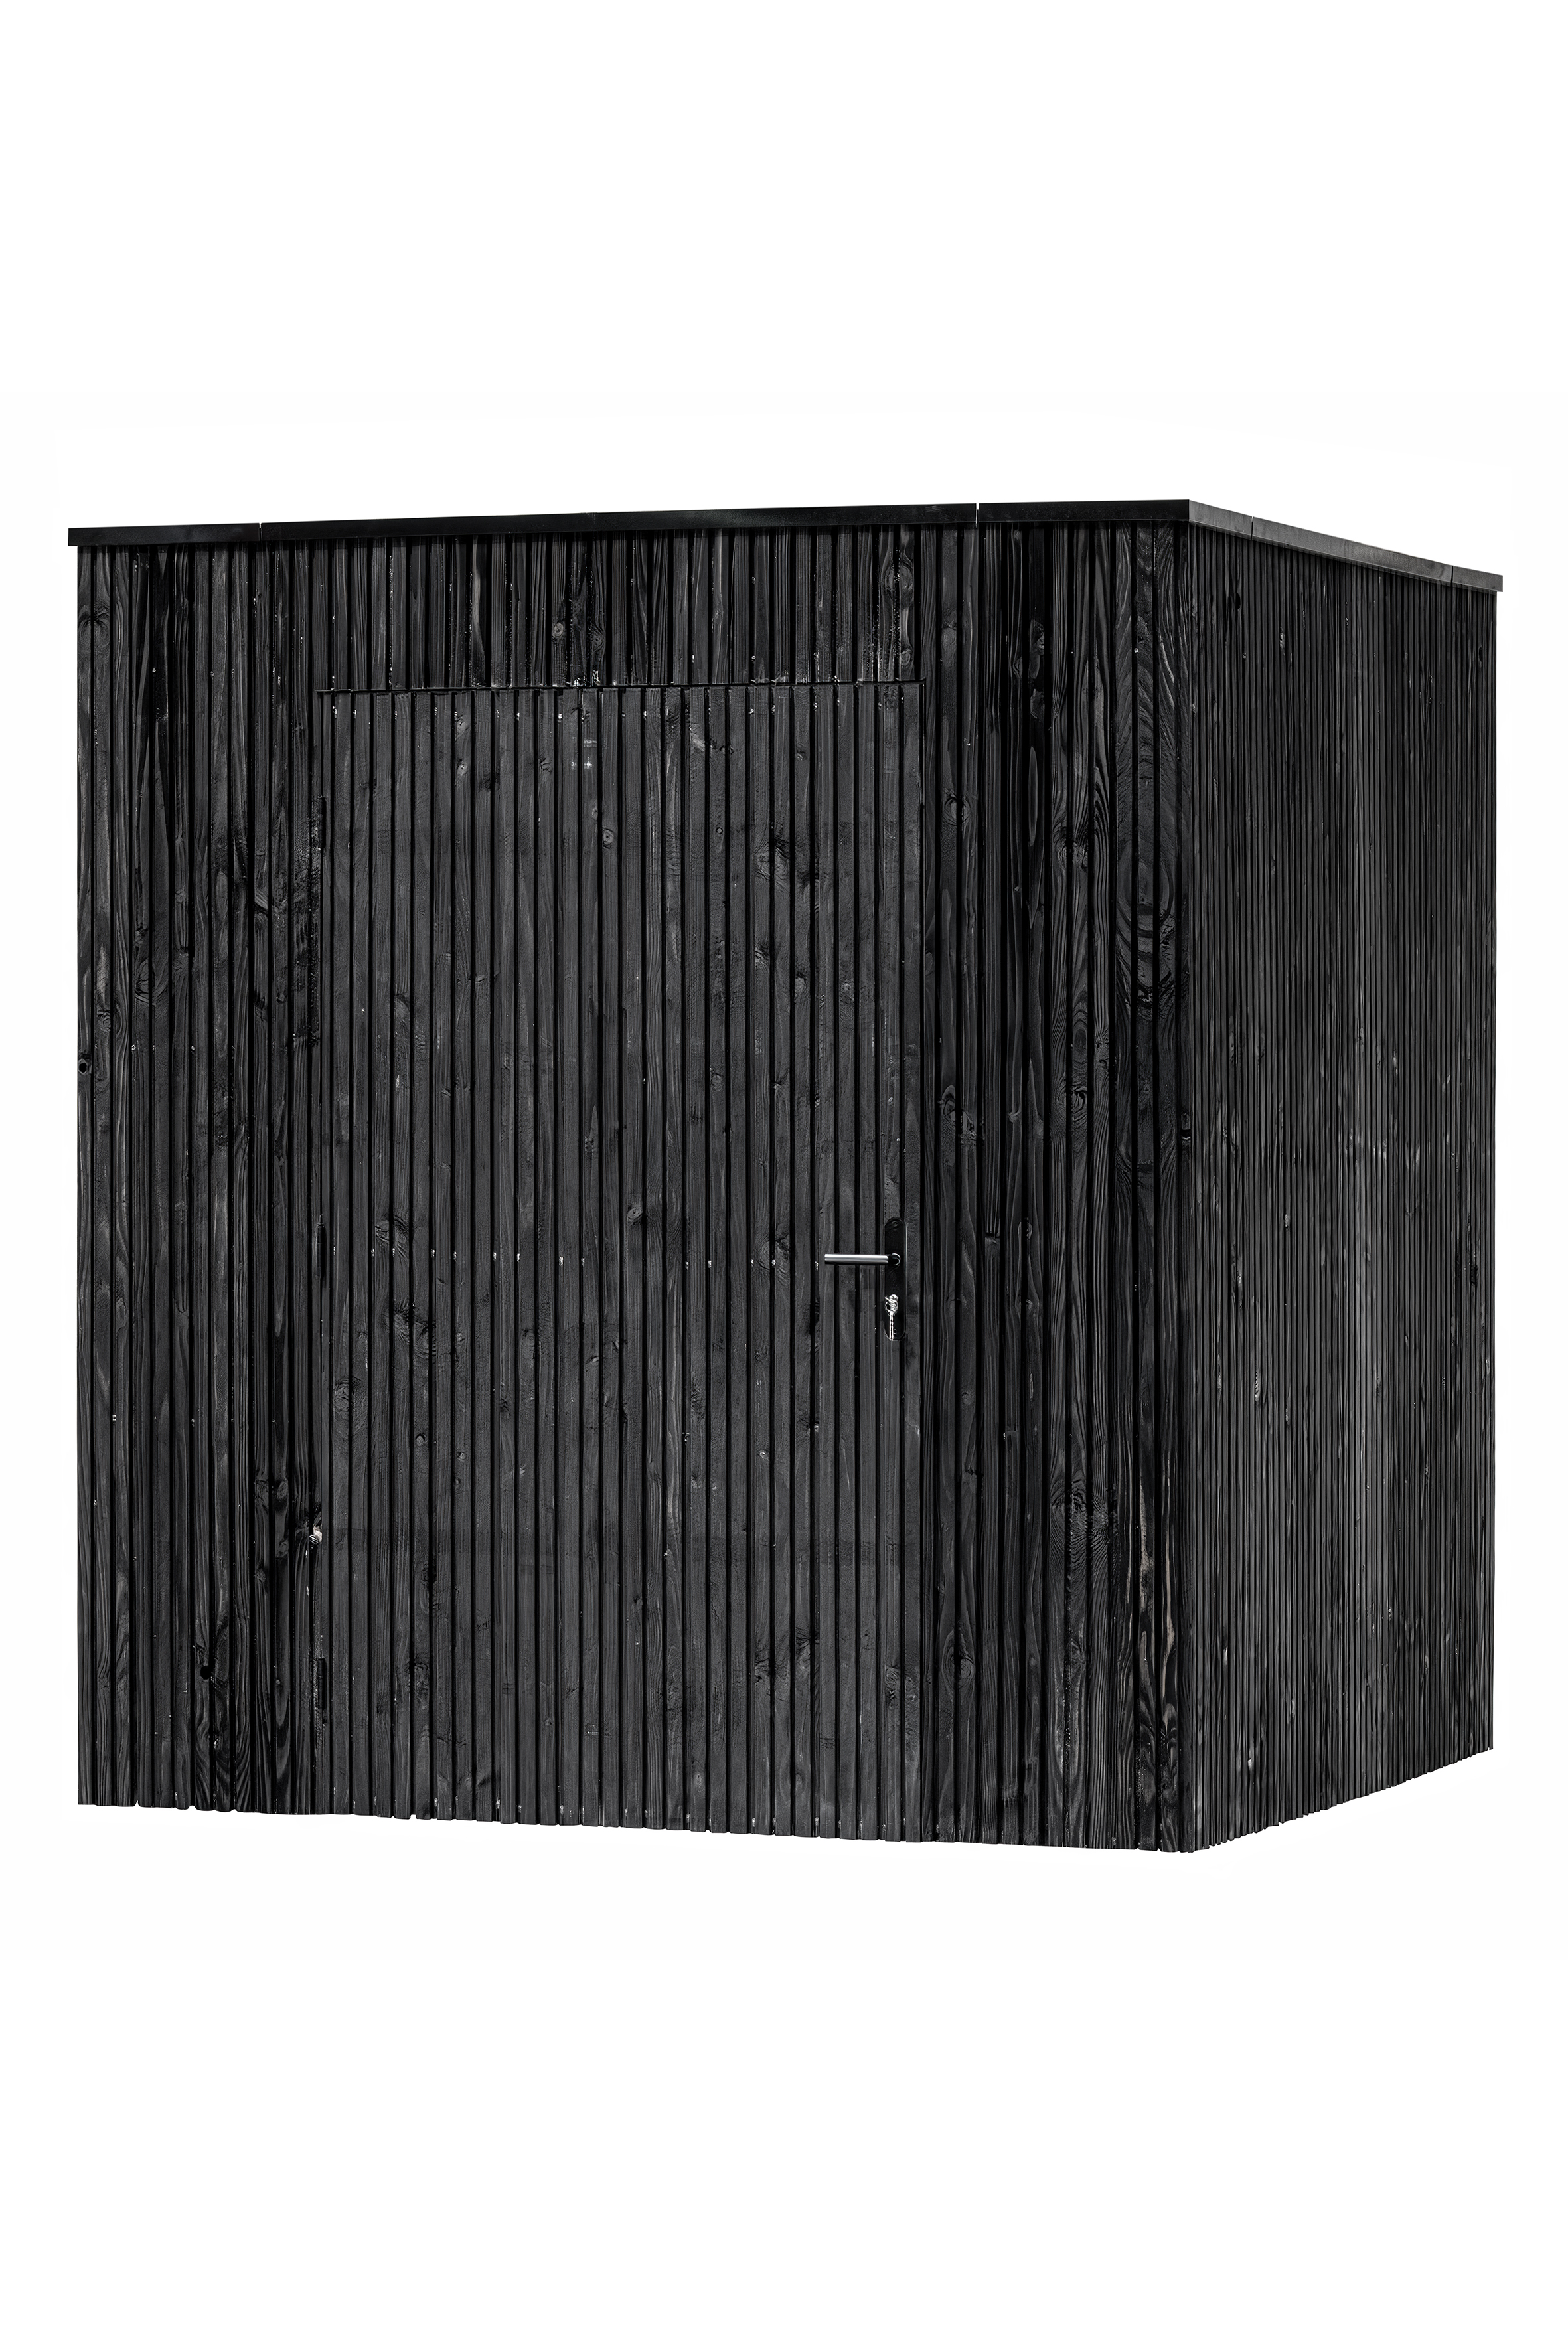 Douglasie Gartenlagerung Brooklyn schwarz gespritzt 219 x 219 x 241 cm inkl. Einzeltür